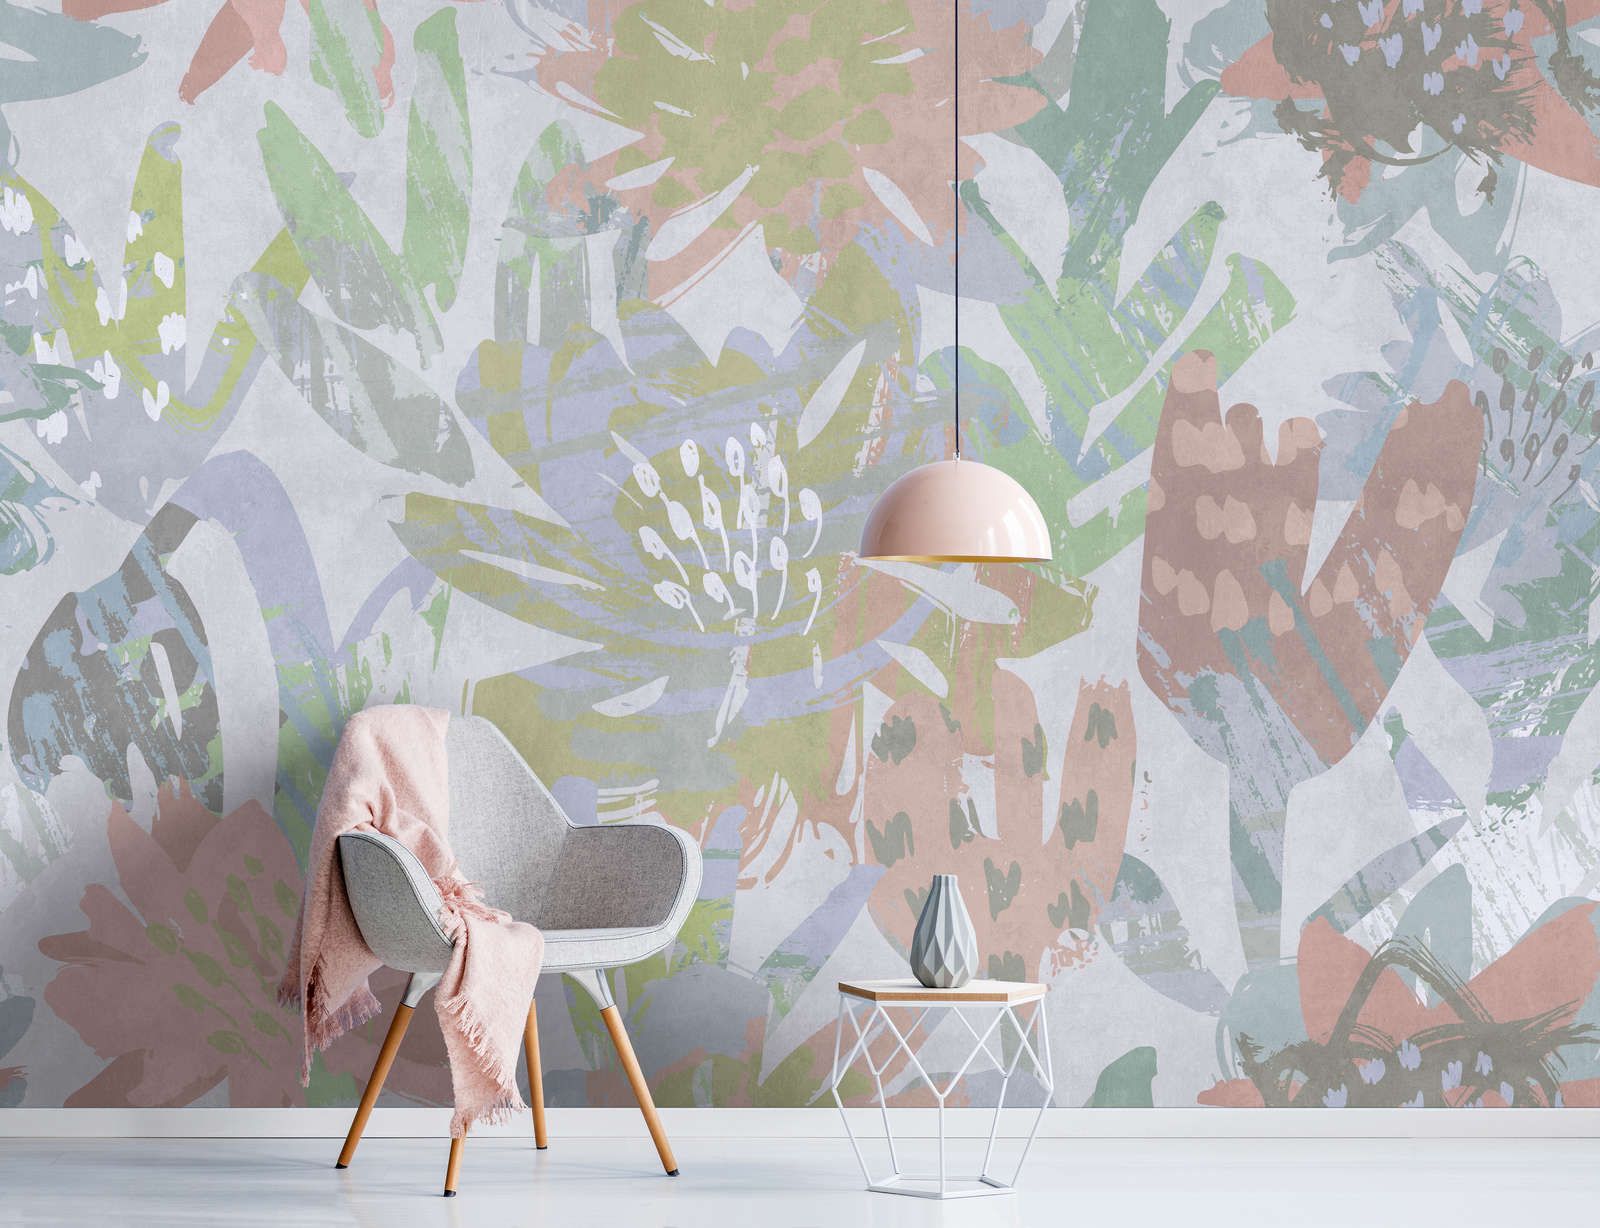             Digital behang »sophia« - Bont bloemenpatroon op betonnen pleisterstructuur - Glad, licht glanzend premium vliesmateriaal
        